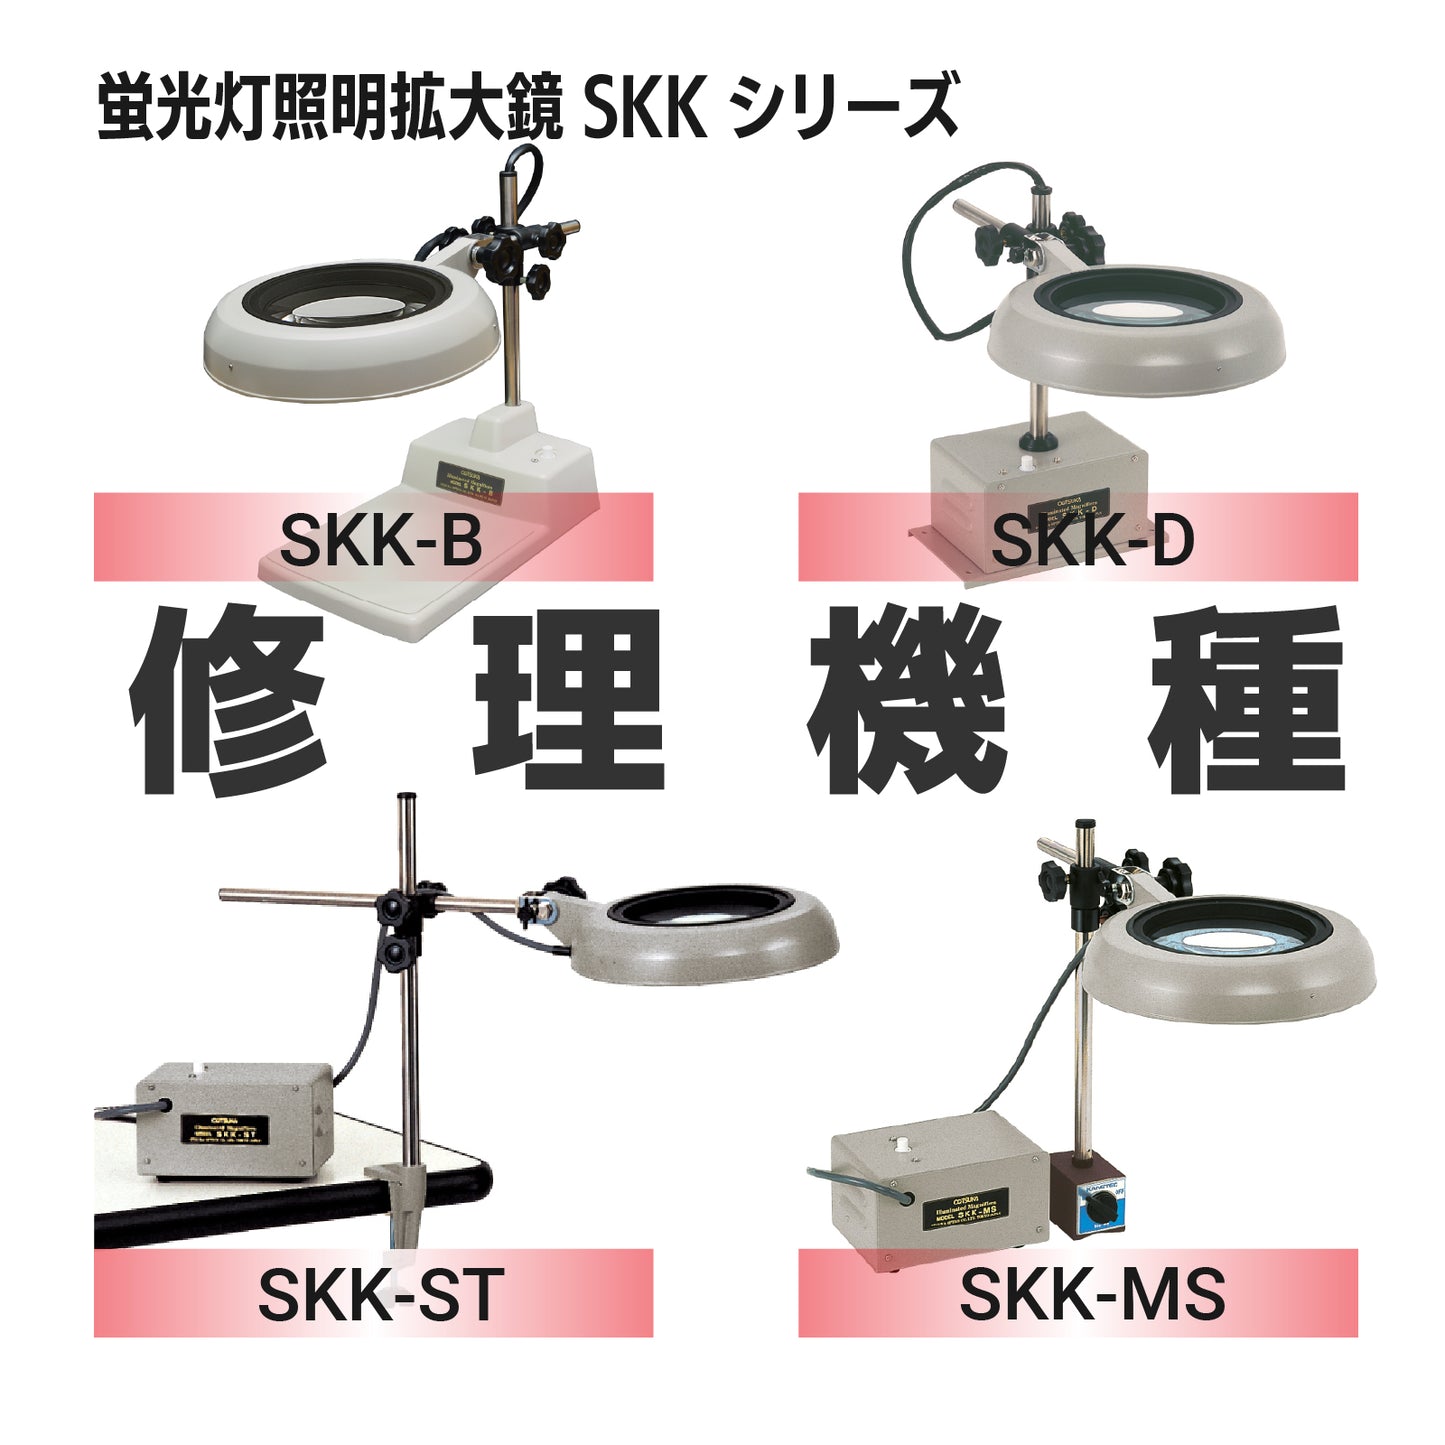 Serie SKK: tipos SKK-B, D, ST, MS